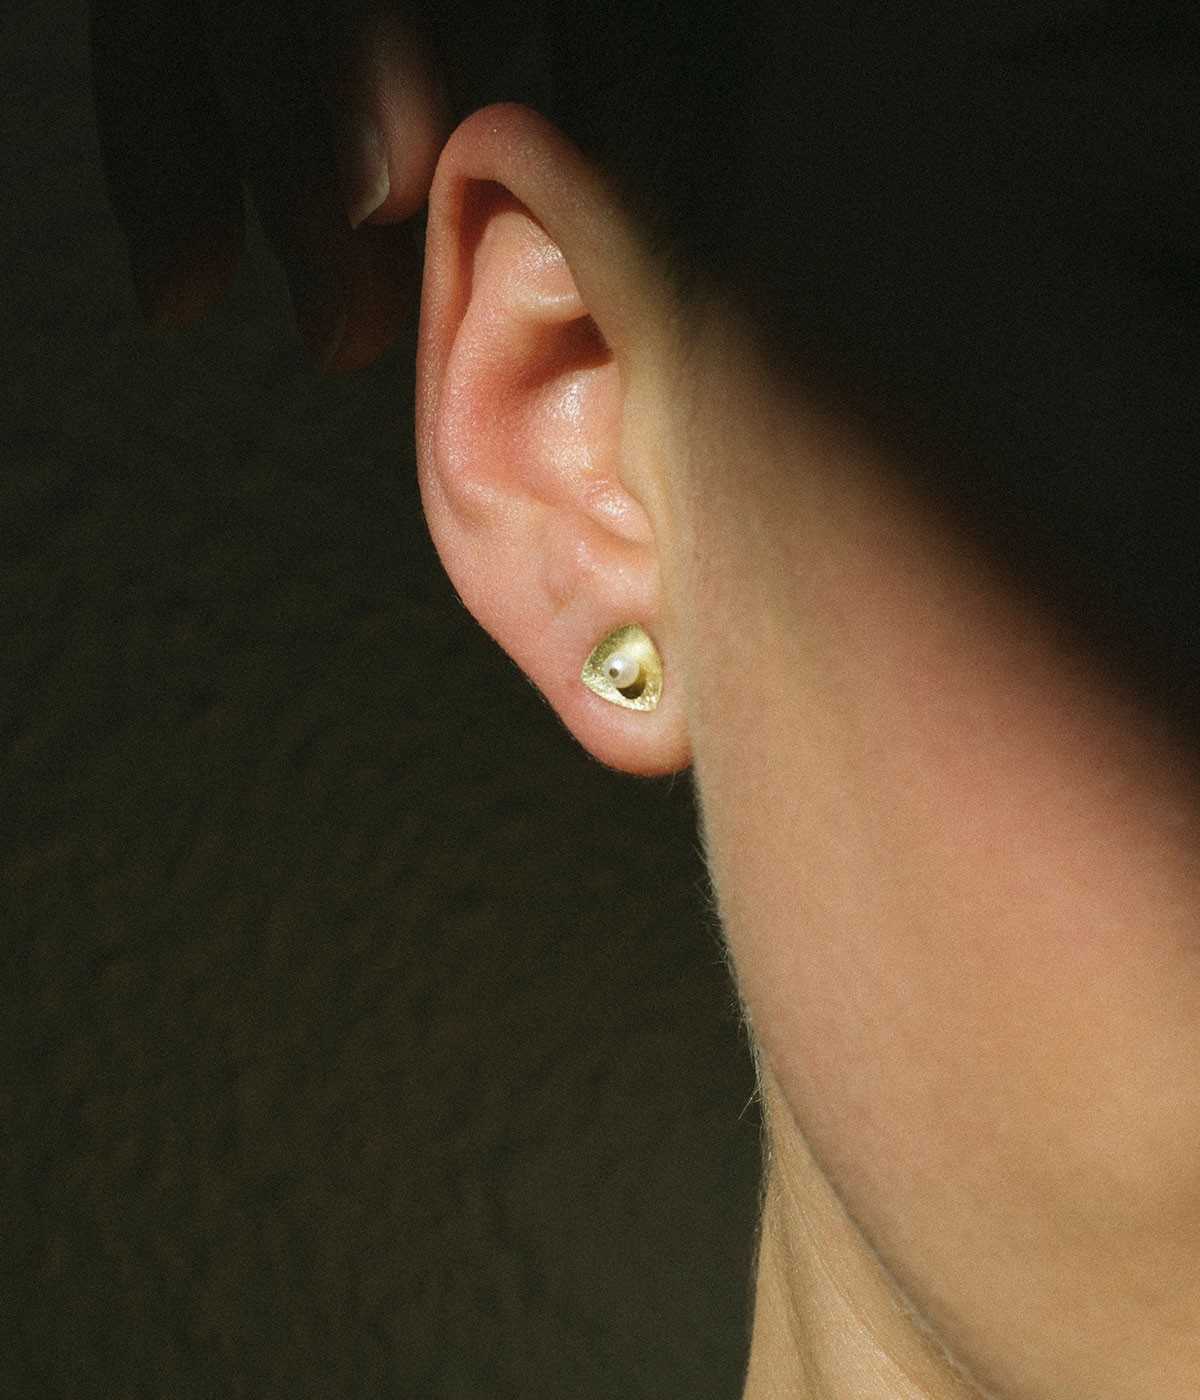 Small feelings earrings